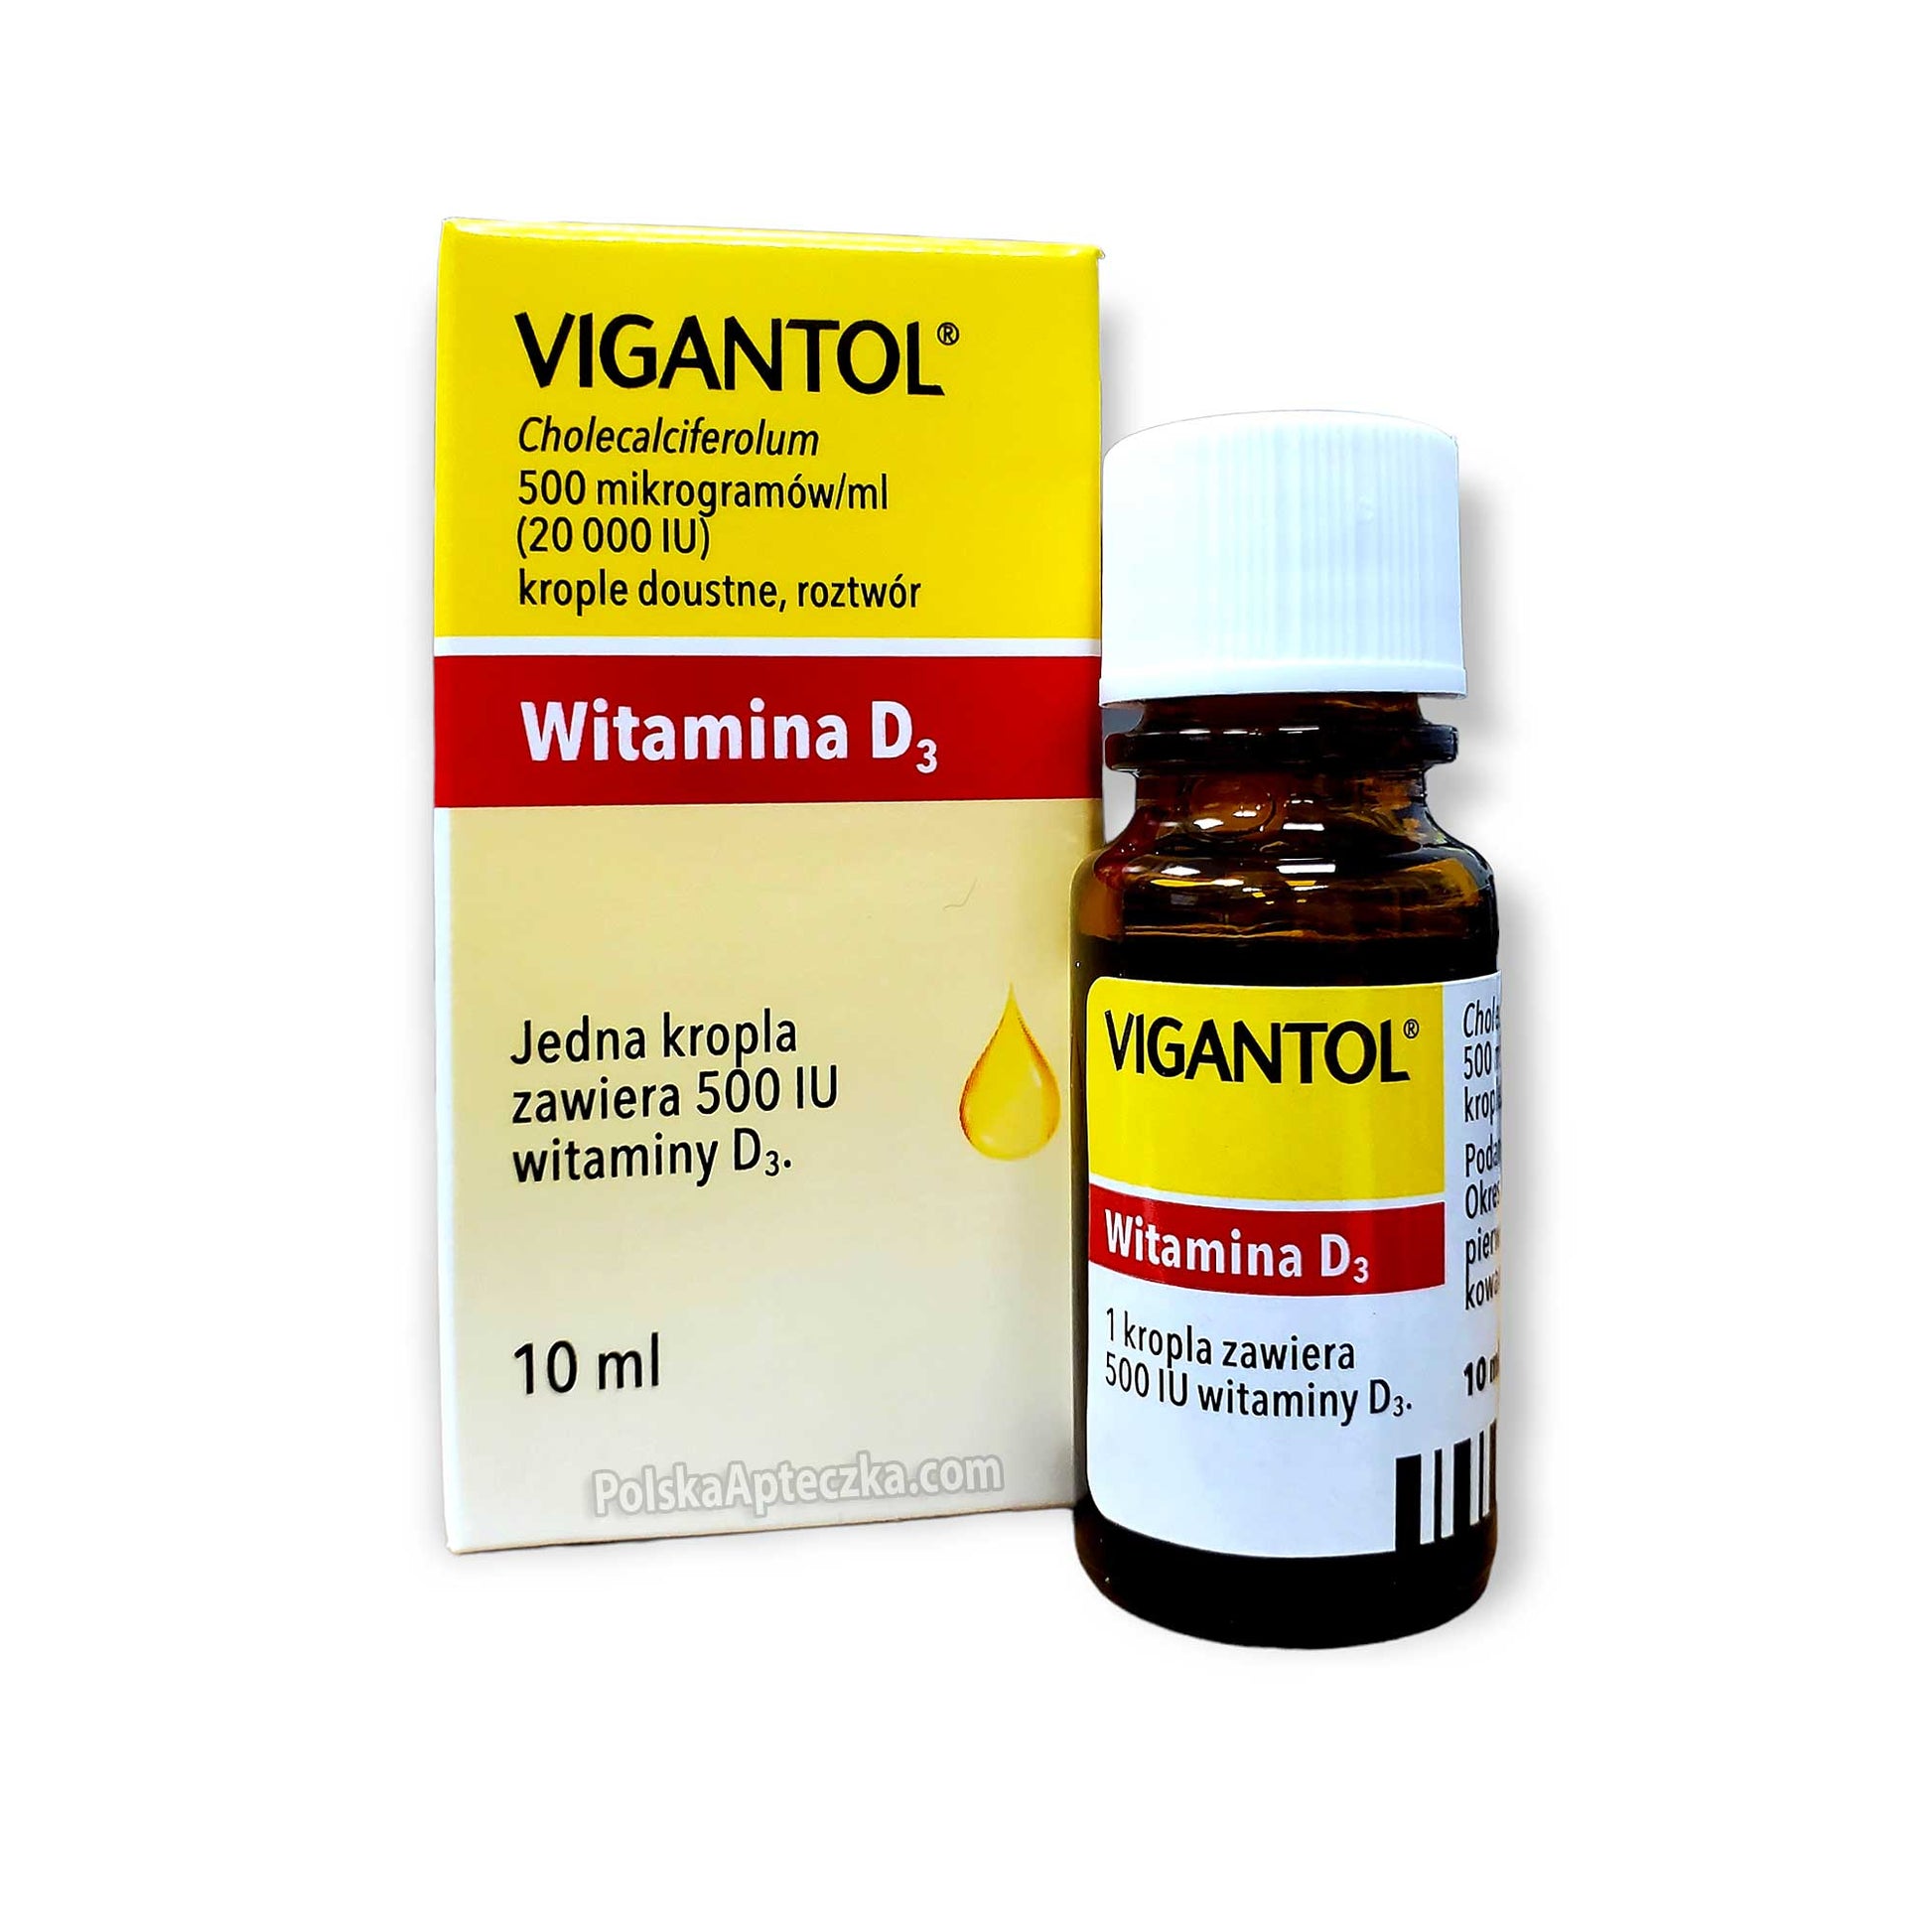 Vigantol vitamin d3 oral drops